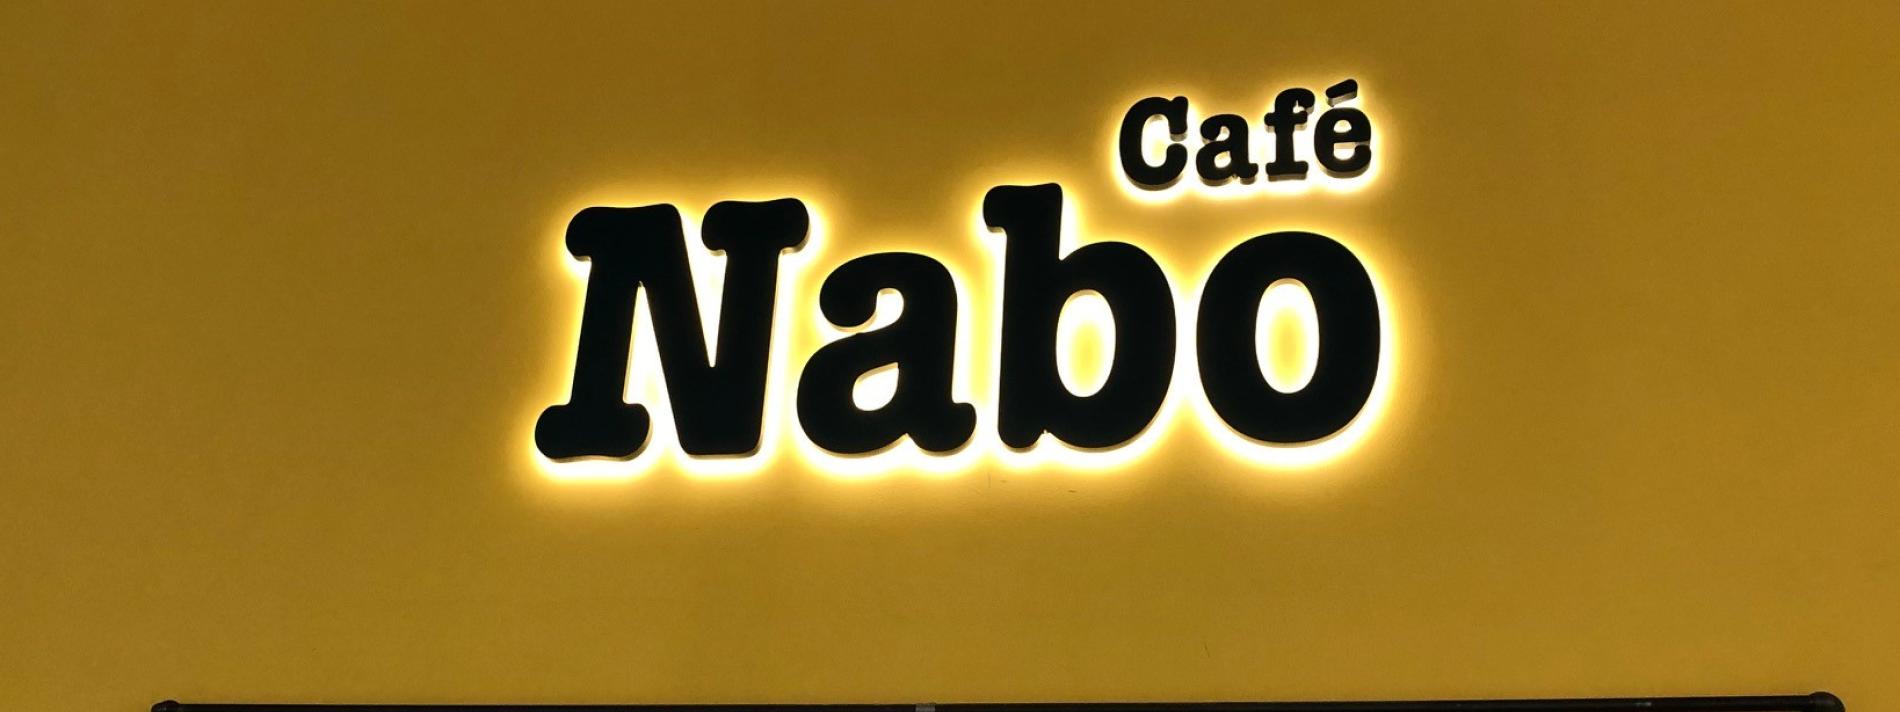 Cafe Nabo lysskilt